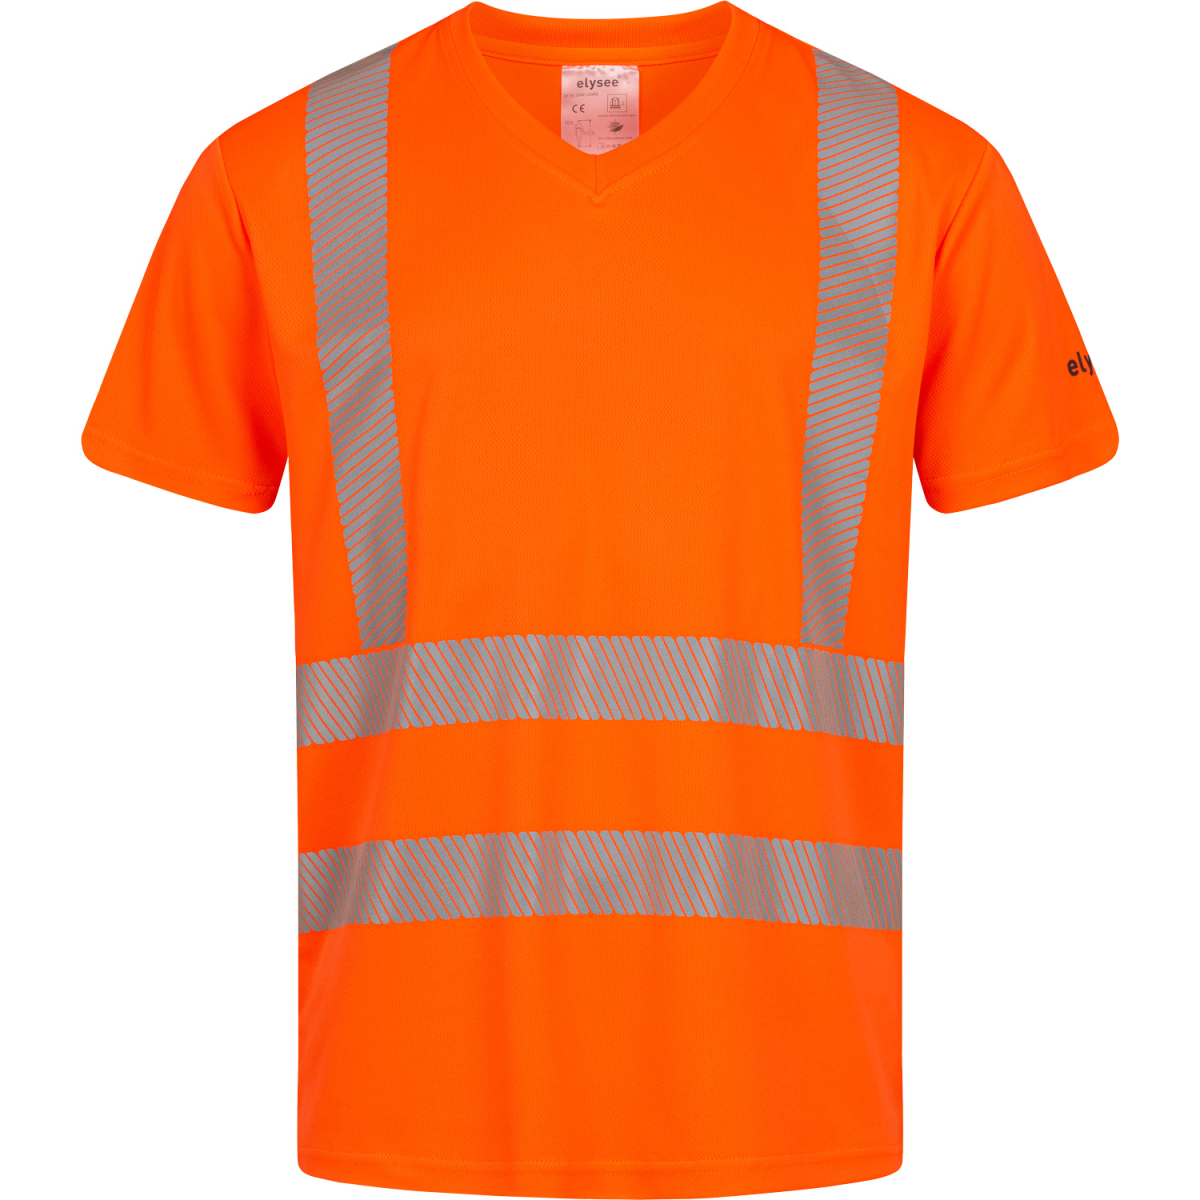 uv warnschutz schutzkleidung oranges t-shirt von elysee